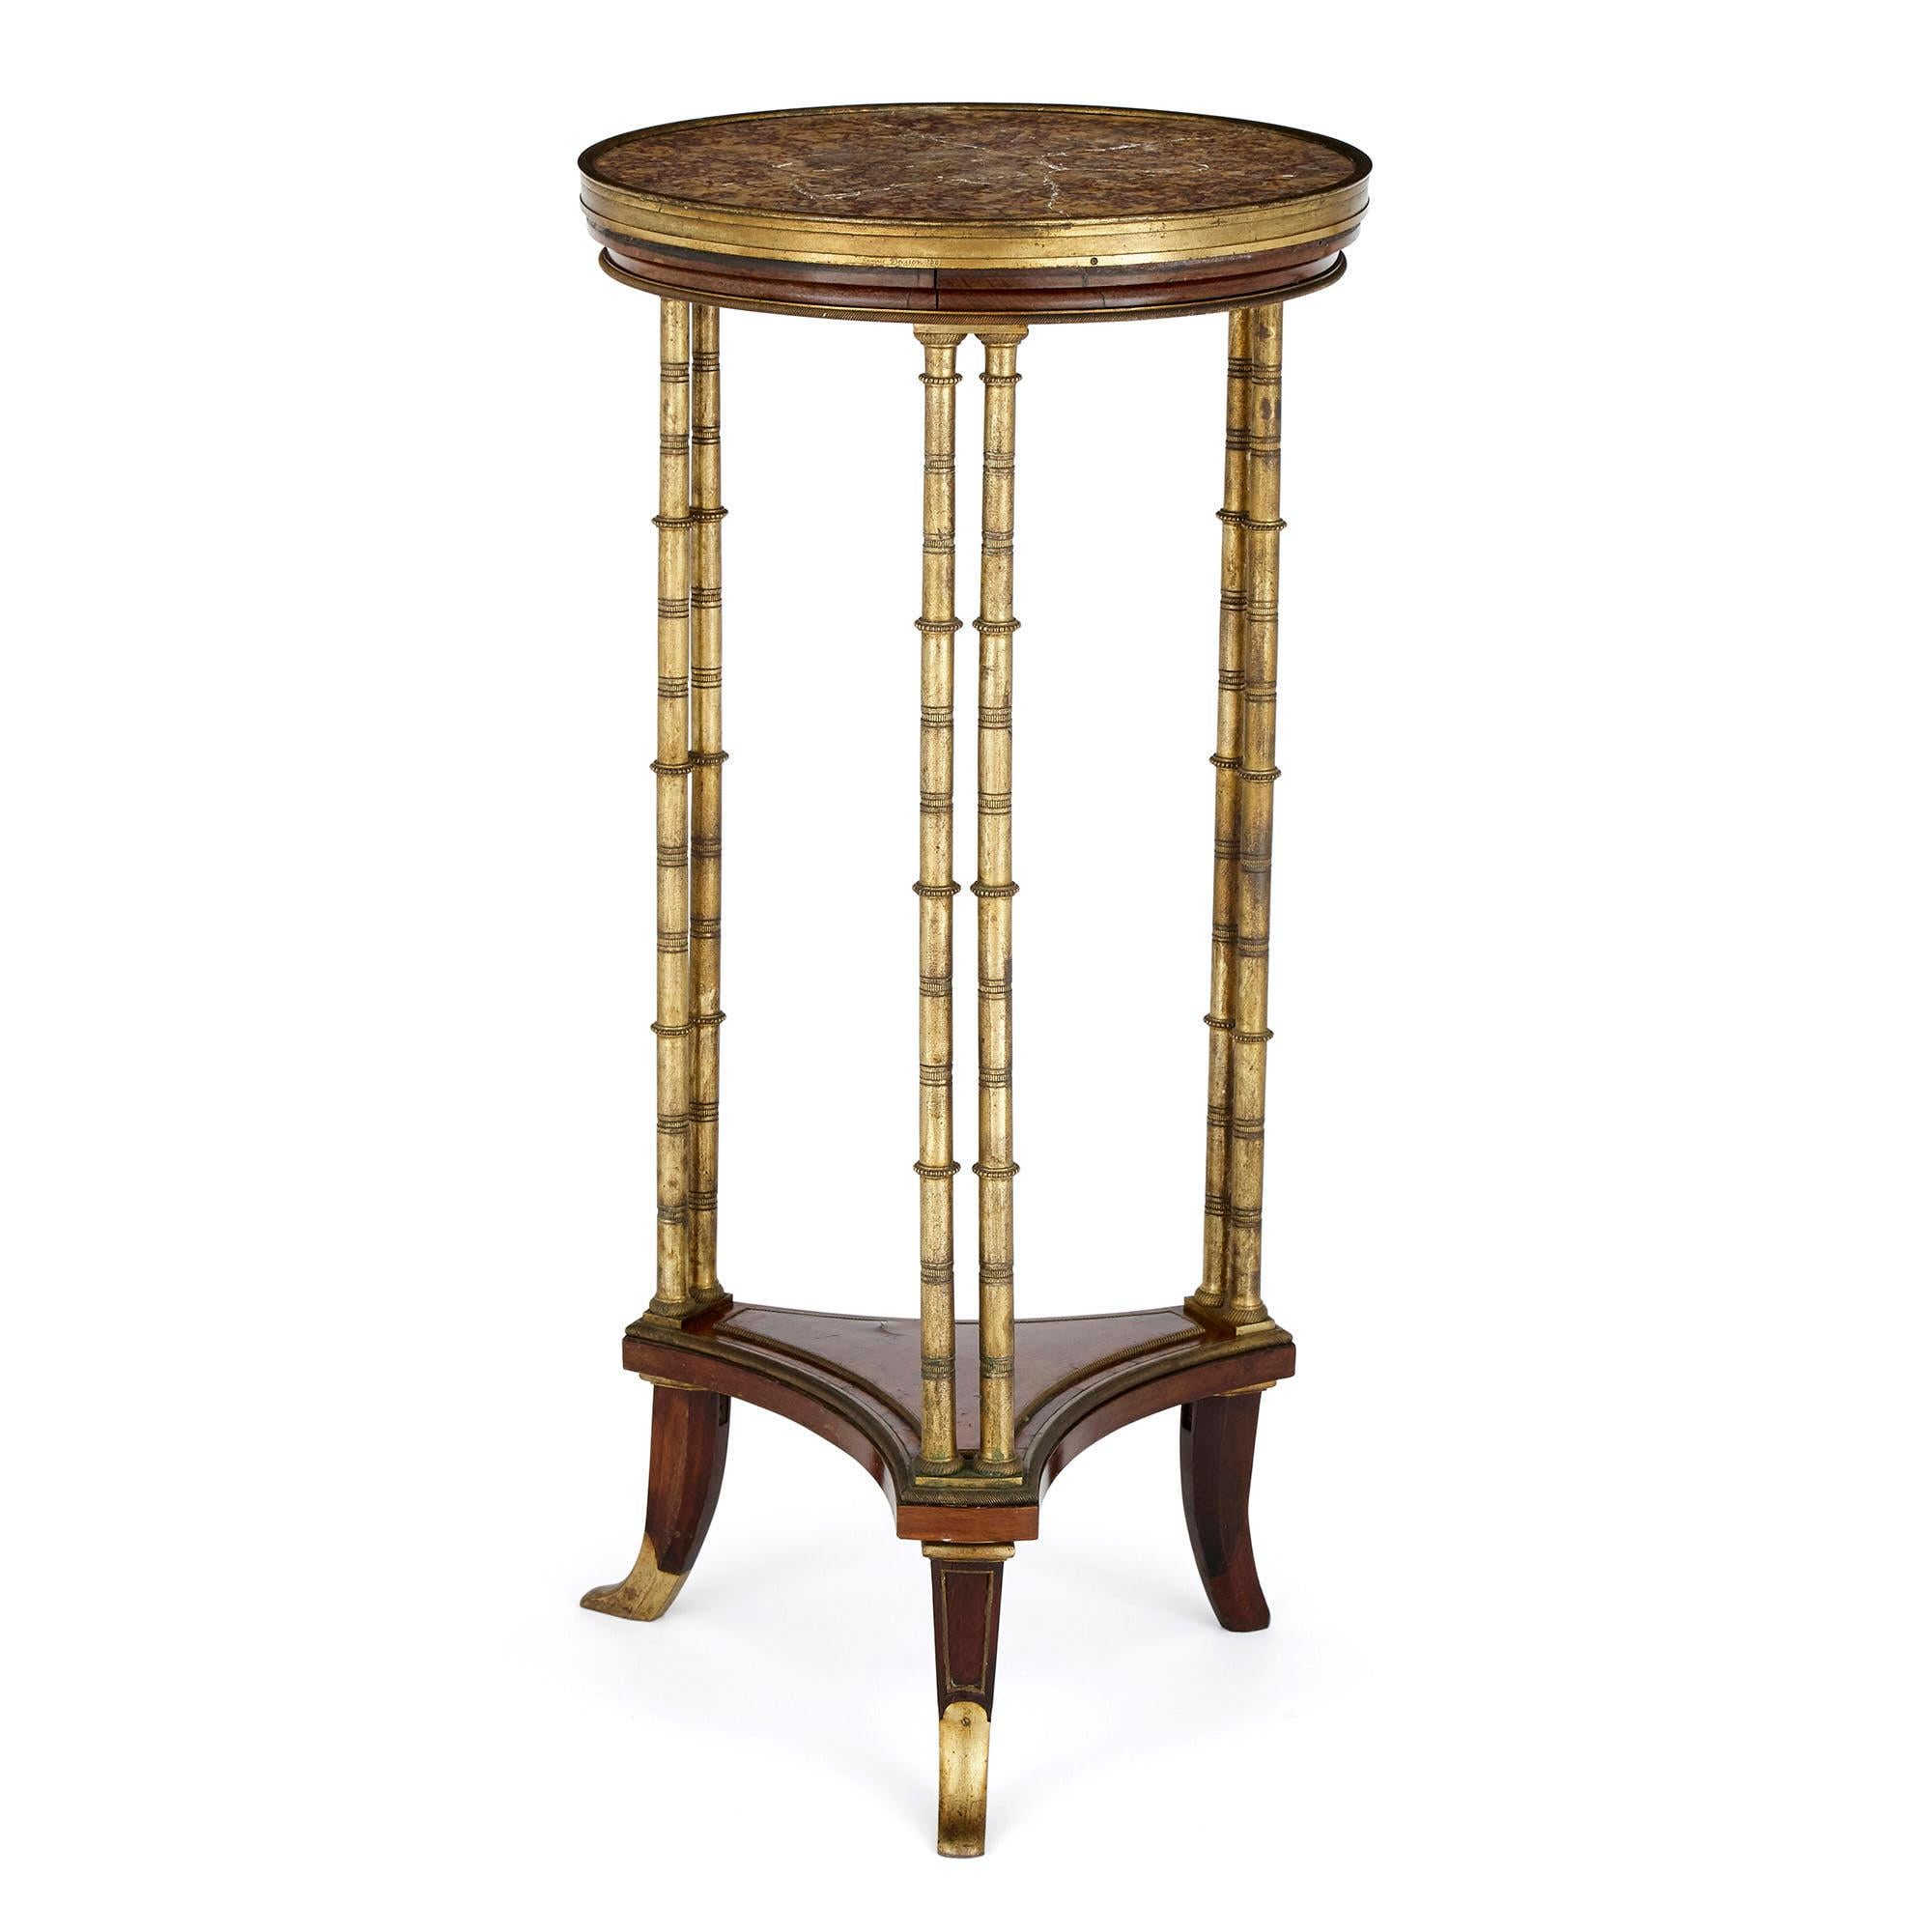 Cette table d'appoint circulaire d'Henry Dasson est surmontée d'un plateau en marbre incrusté, délimité par un anneau en bronze doré et placé au-dessus d'un tablier en acajou. La table repose sur trois pieds à deux colonnes en bronze doré, qui